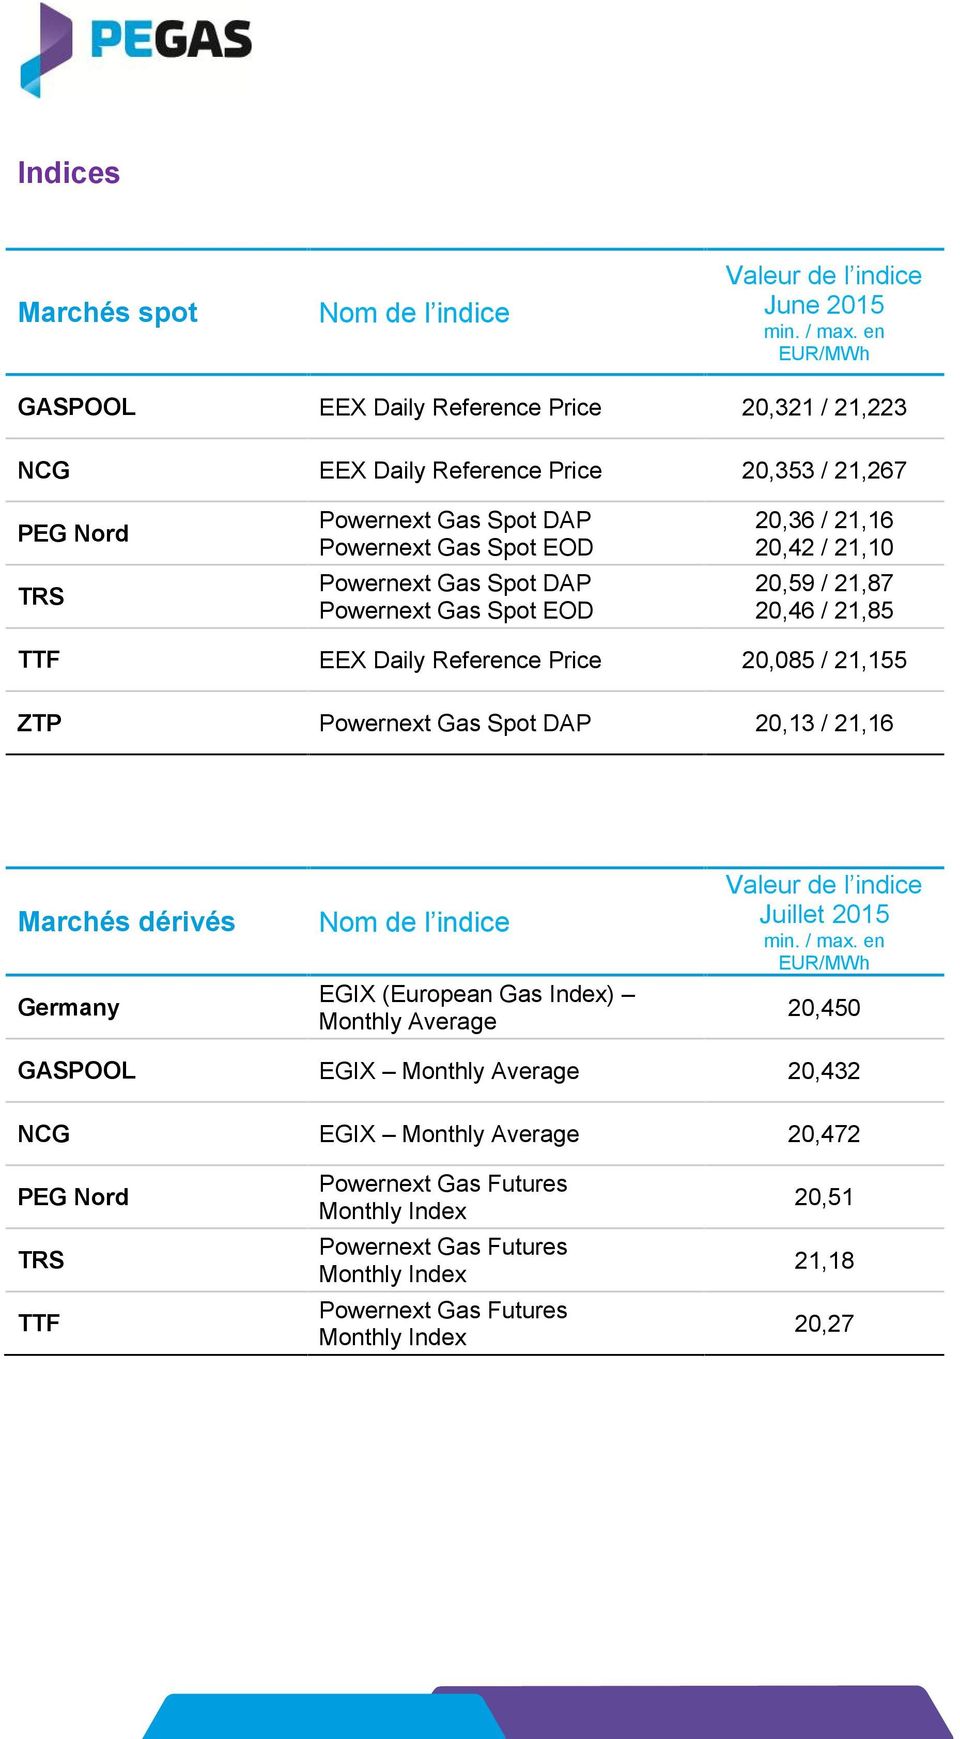 Spot DAP Powernext Gas Spot EOD 20,36 / 21,16 20,42 / 21,10 20,59 / 21,87 20,46 / 21,85 TTF EEX Daily Reference Price 20,085 / 21,155 ZTP Powernext Gas Spot DAP 20,13 / 21,16